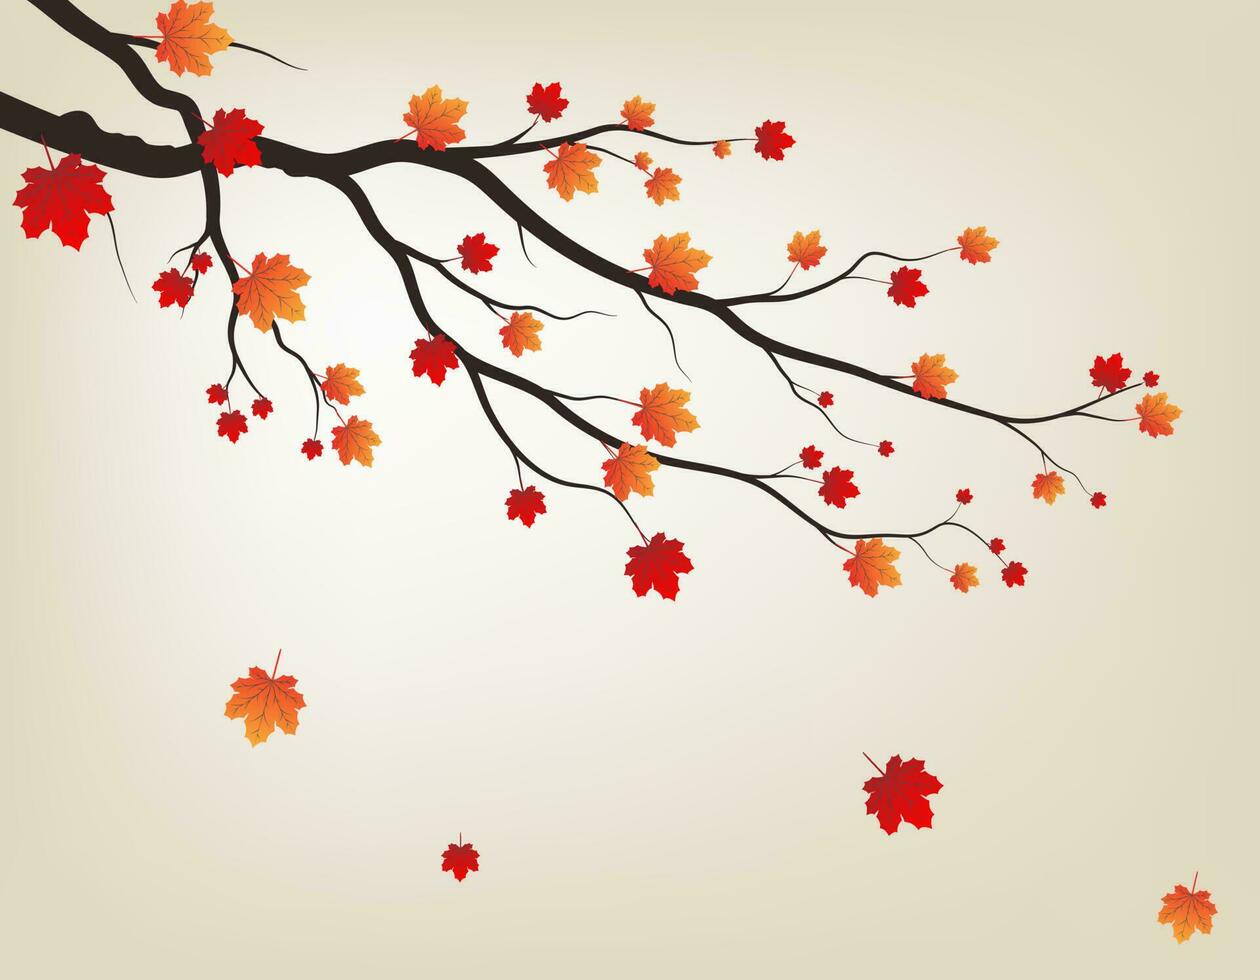 Baum und Blätter für den Hintergrundstil der Herbstsaison. willkommenes konzept für die herbstsaison. vektor